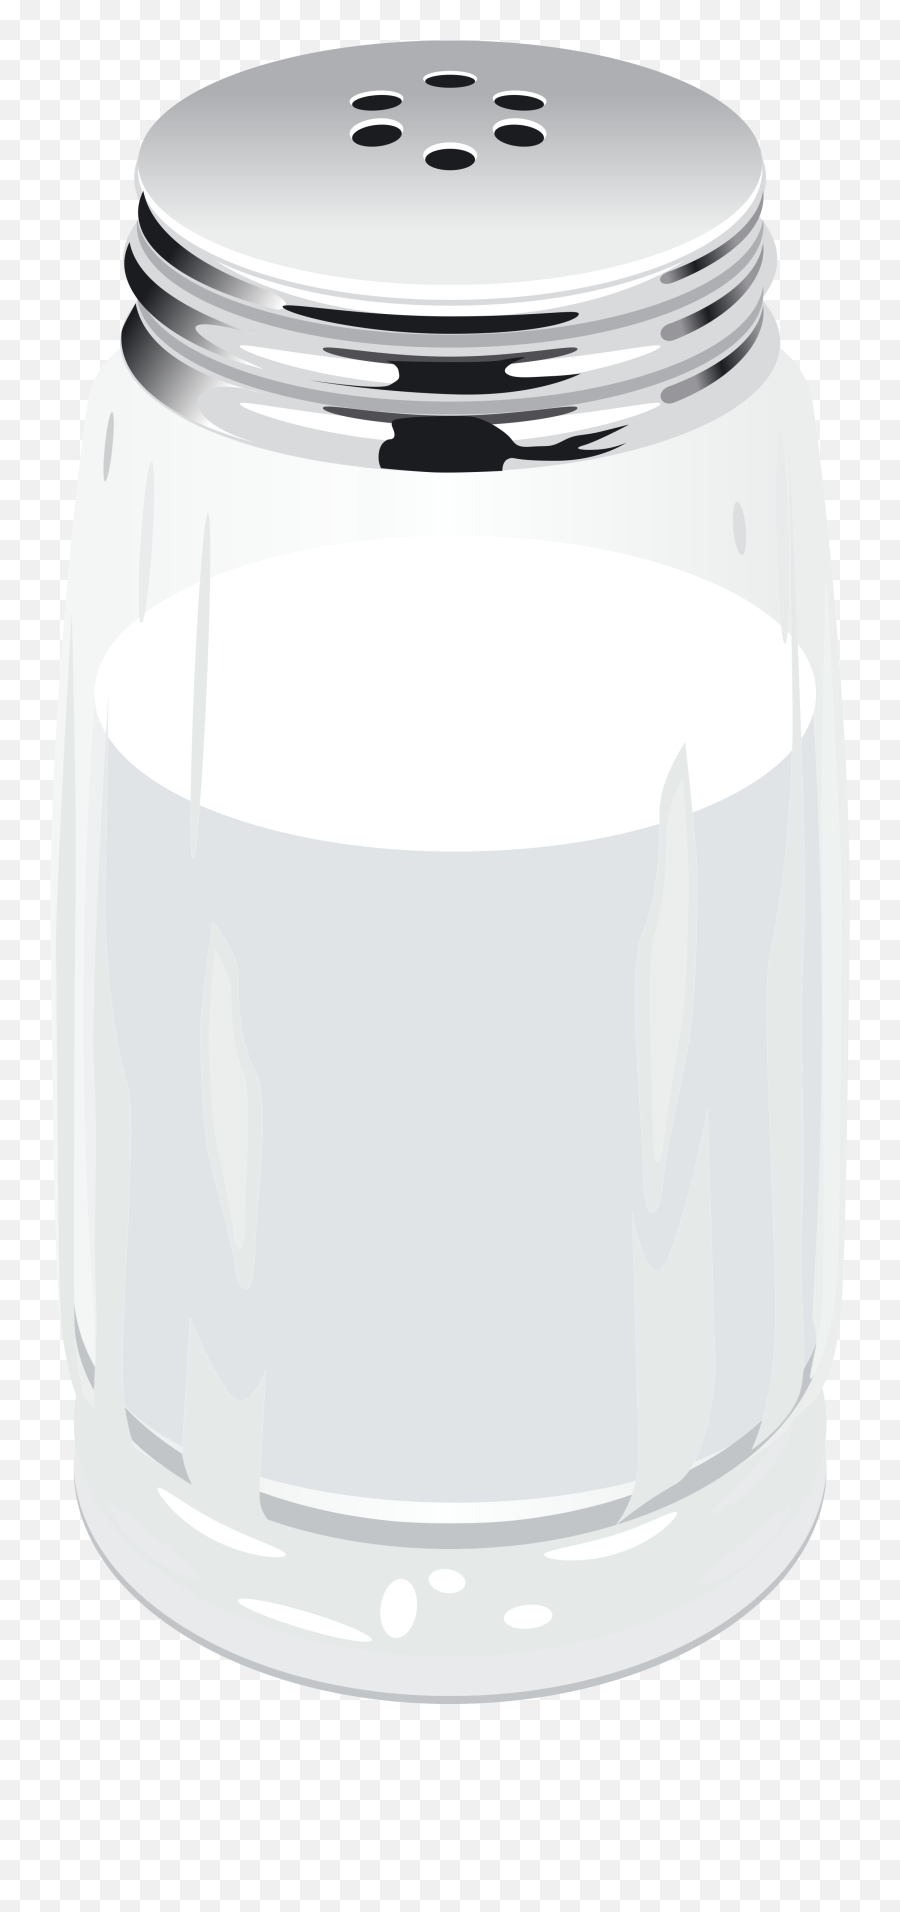 Salt Emoji Png - Salt Shaker Png Clipart Clip Art Lid,Cruise Ship Emoji